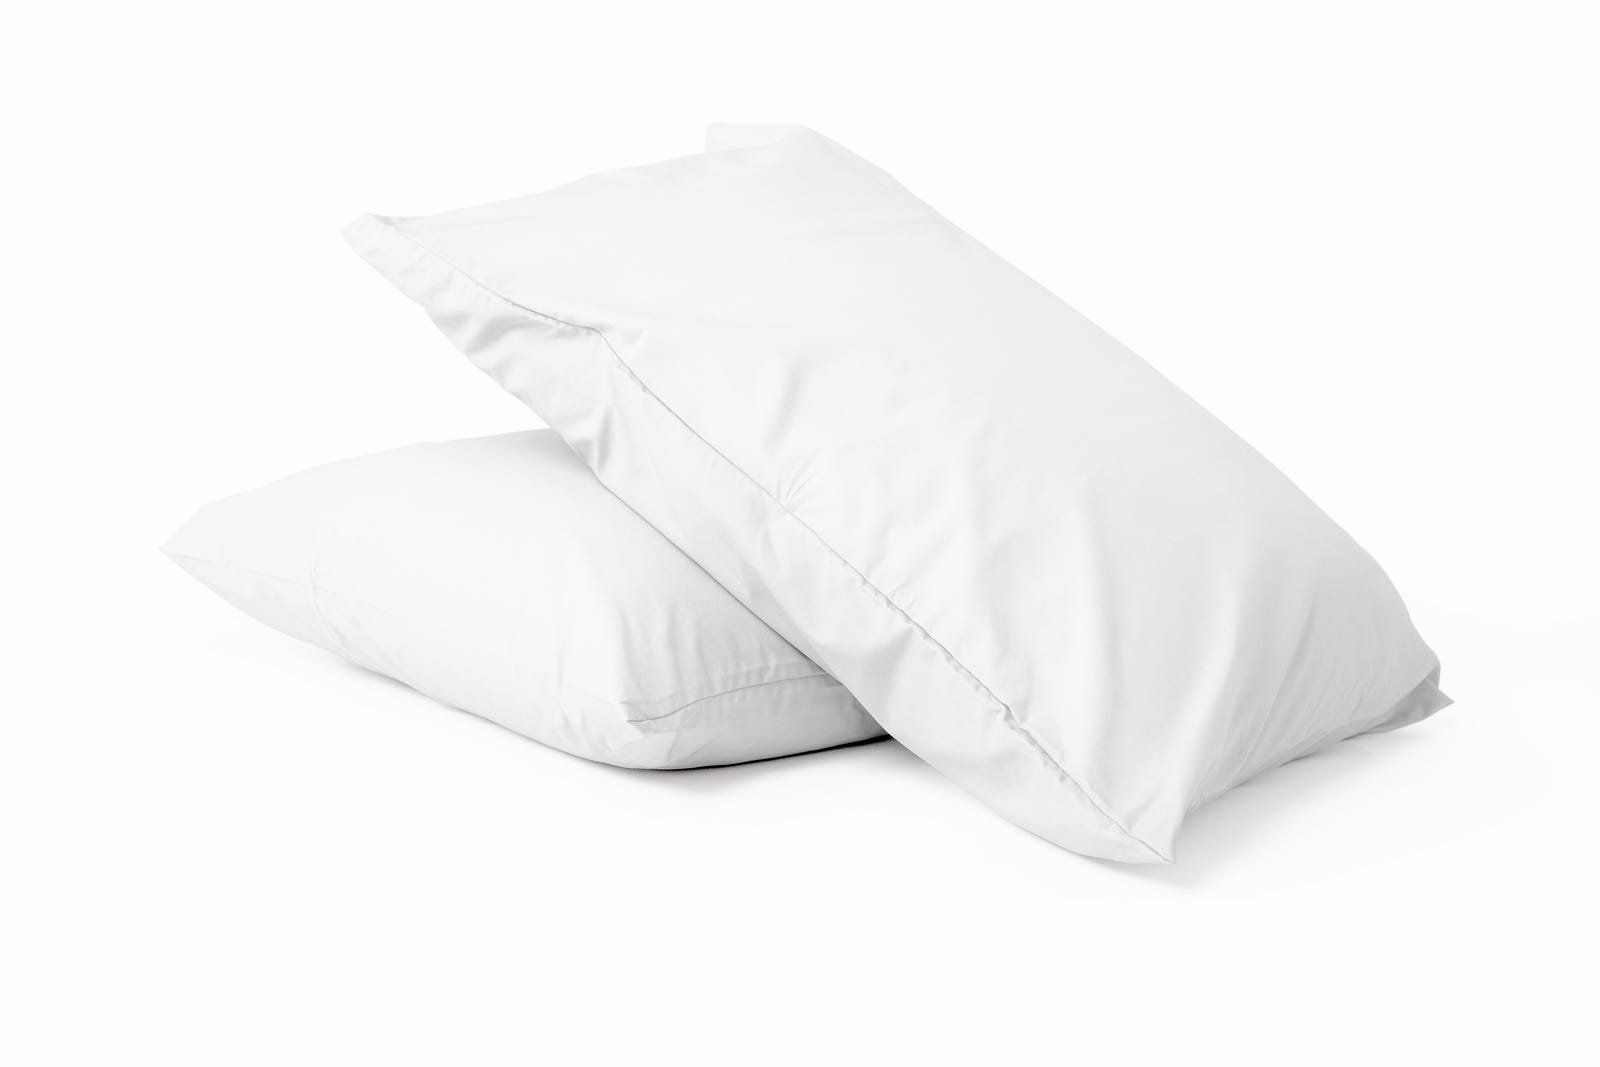 Medium-231575-Pillows_cotton_Percale-3a-1.png